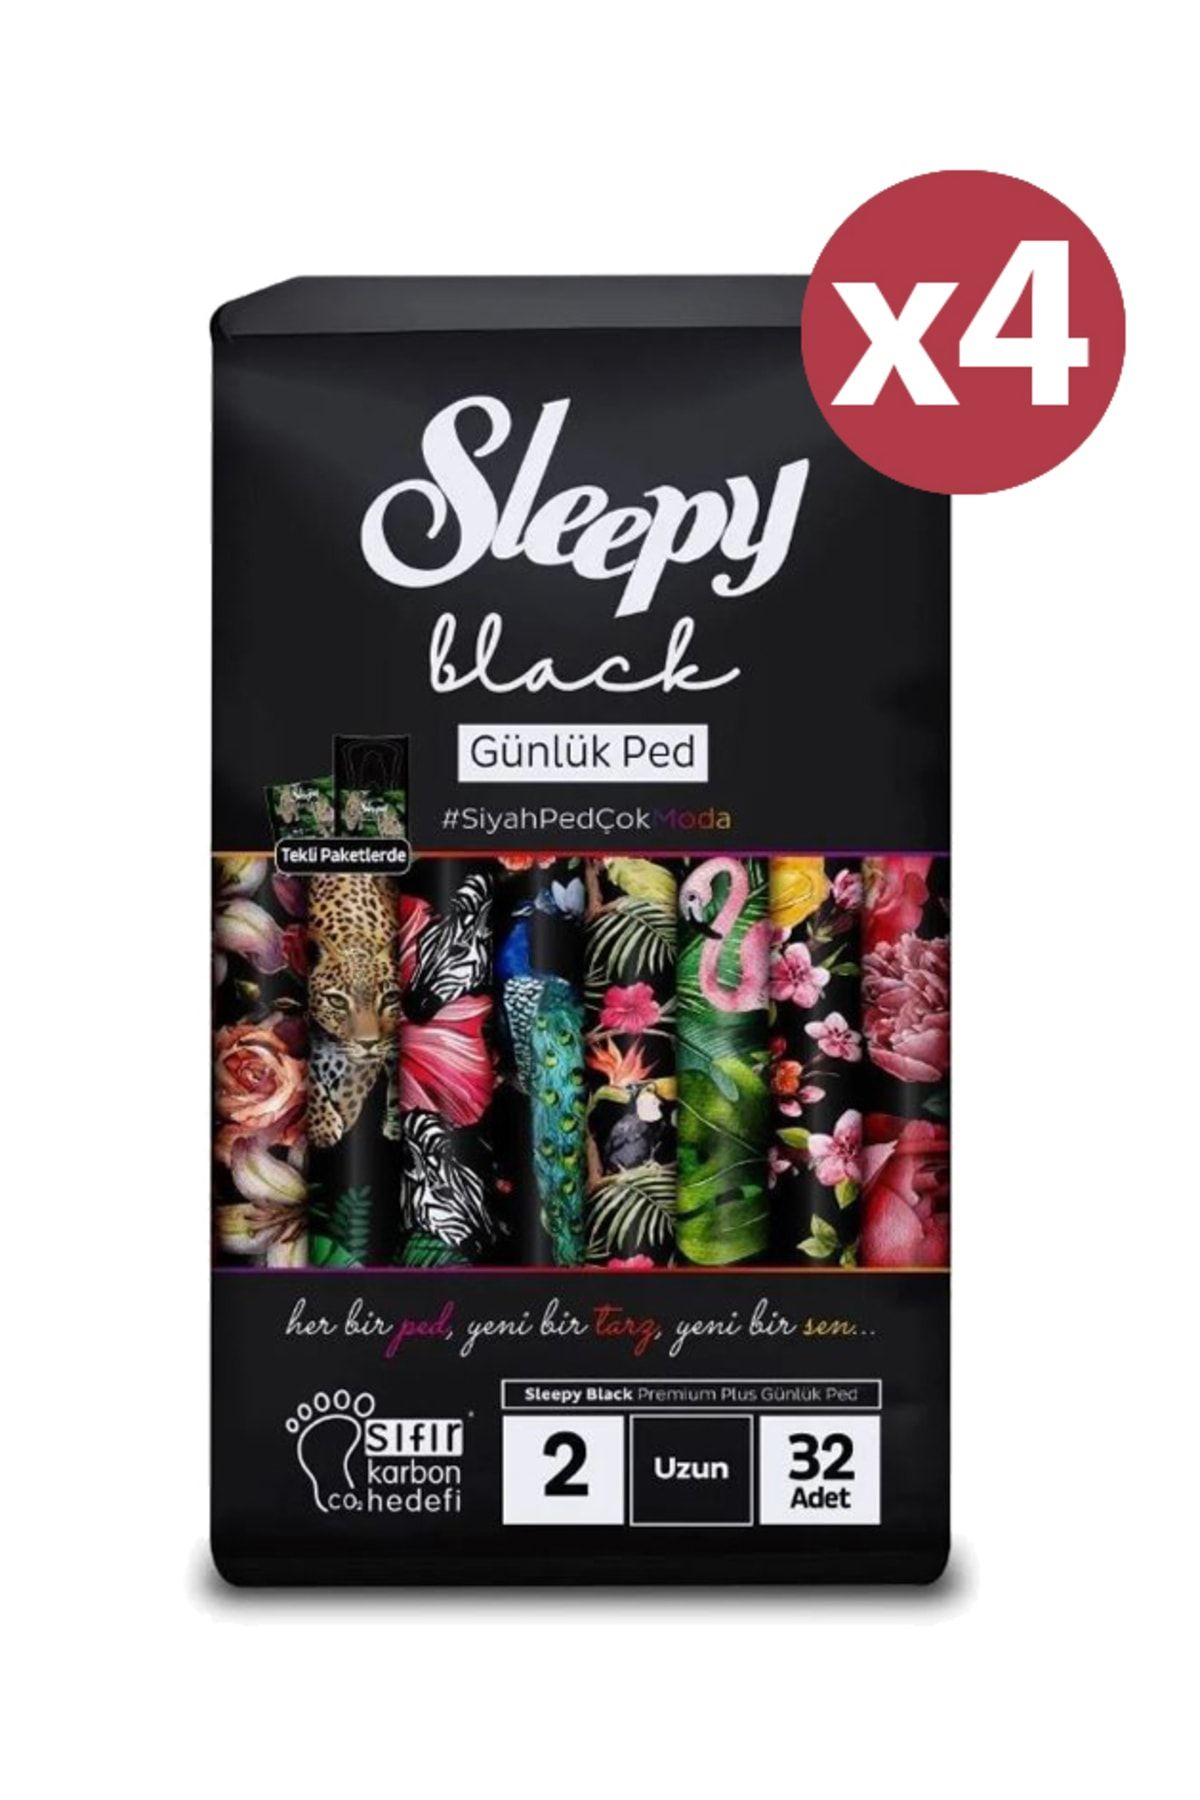 Sleepy Black Premium Plus Günlük Ped Uzun 128 Adet